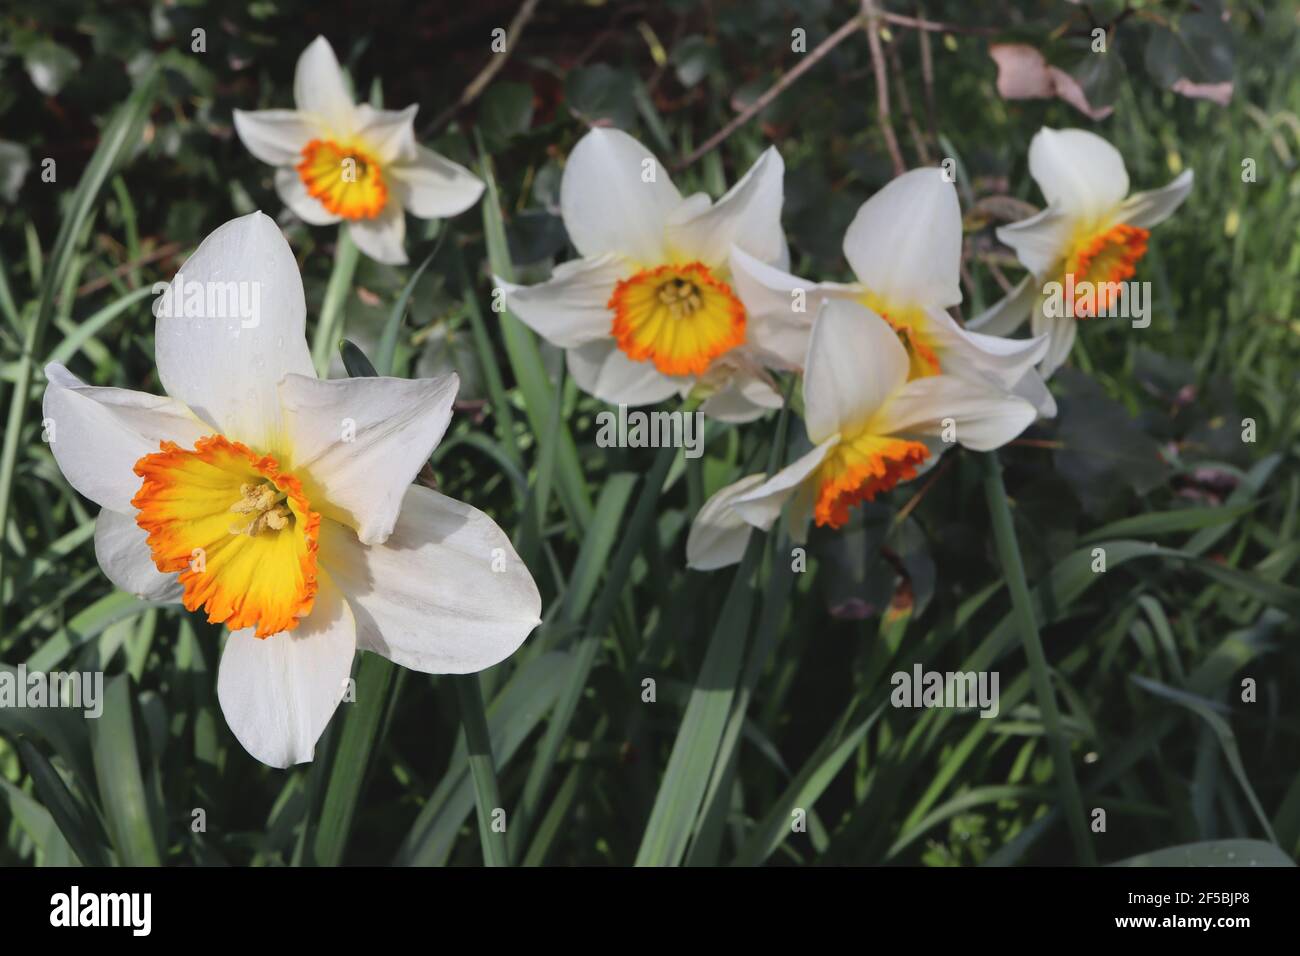 Narcissus «Verger» Division 3 jonquilles à petites tasses le jonquille de Verger - pétales blancs et coupe dorée avec rebord orange, mars, Angleterre, Royaume-Uni Banque D'Images